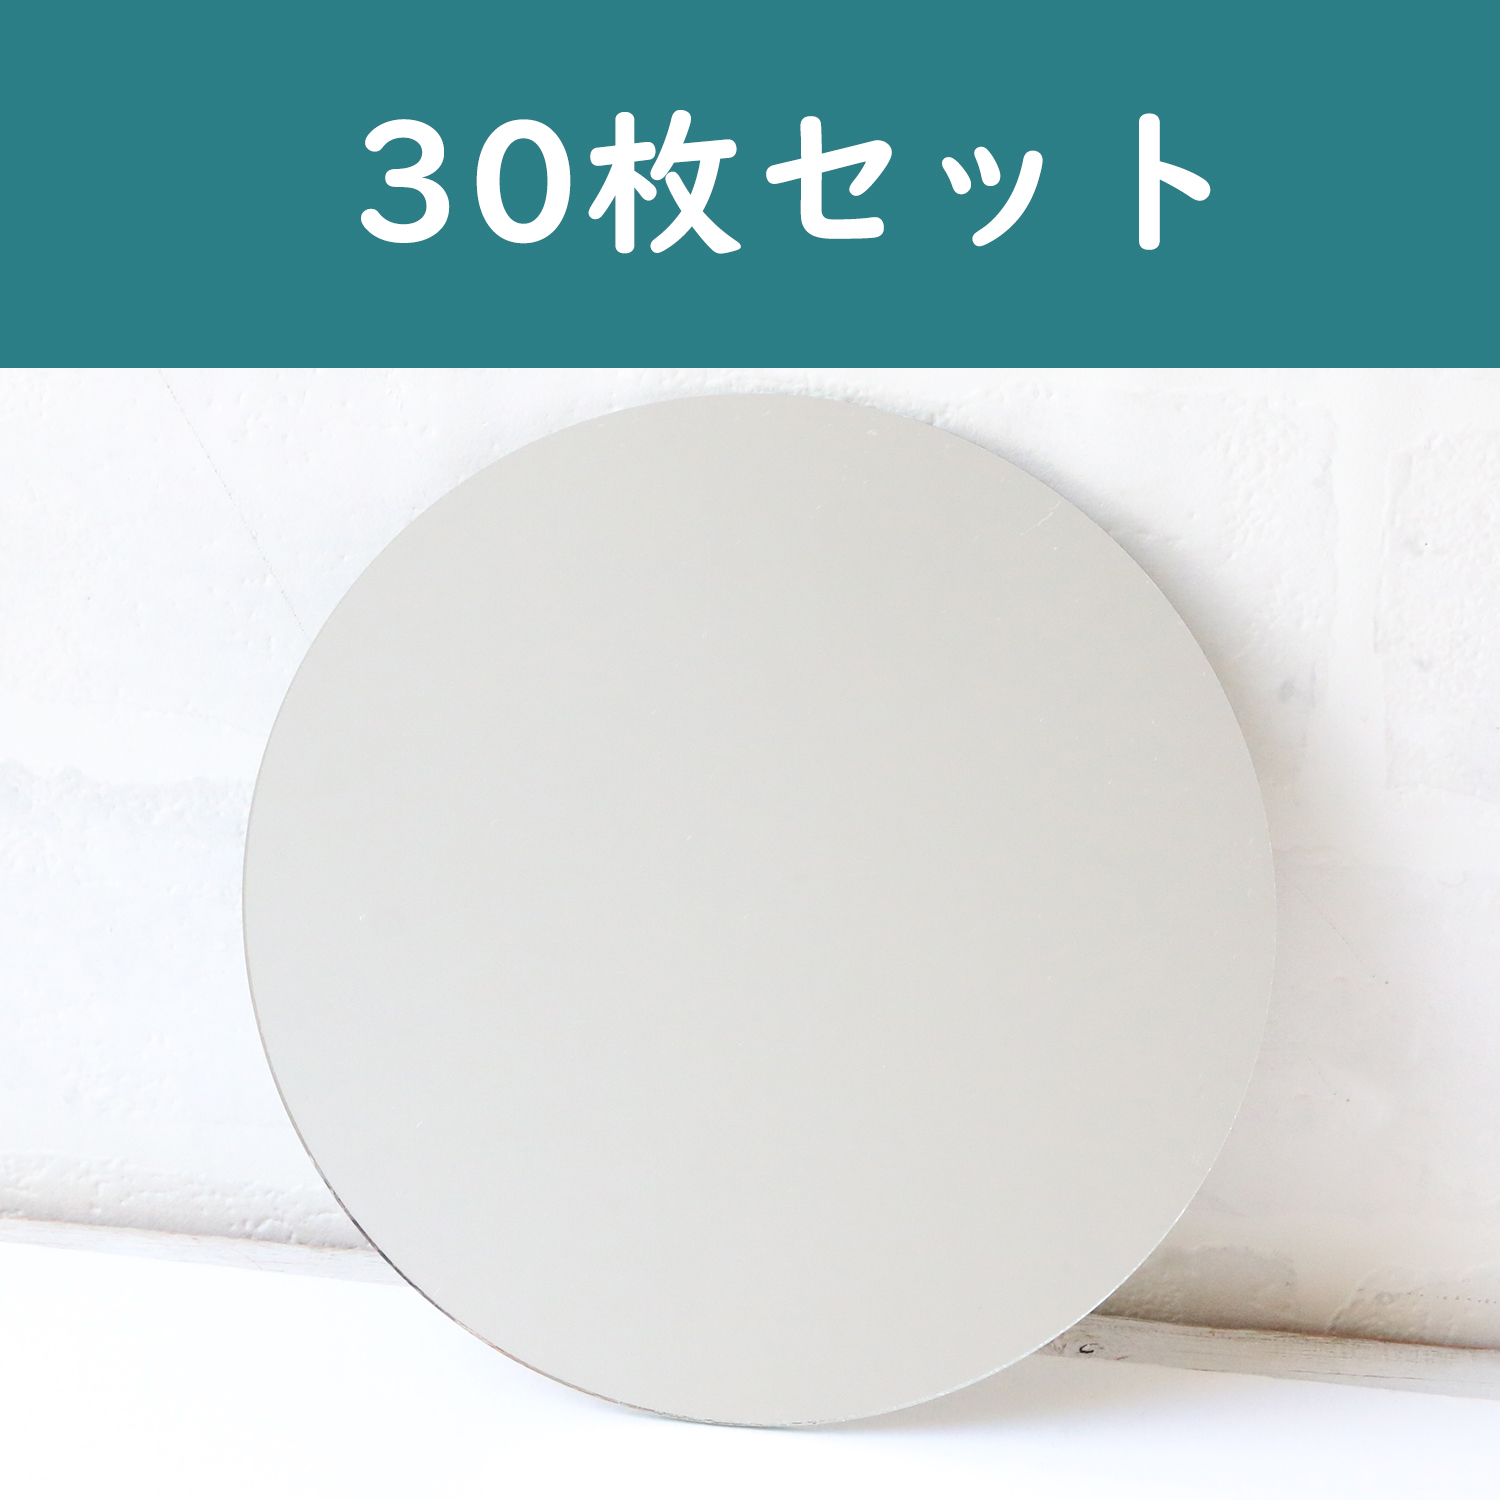 【徳用】KN147 ミラー 丸 約φ14.7cm 30枚入 (袋)